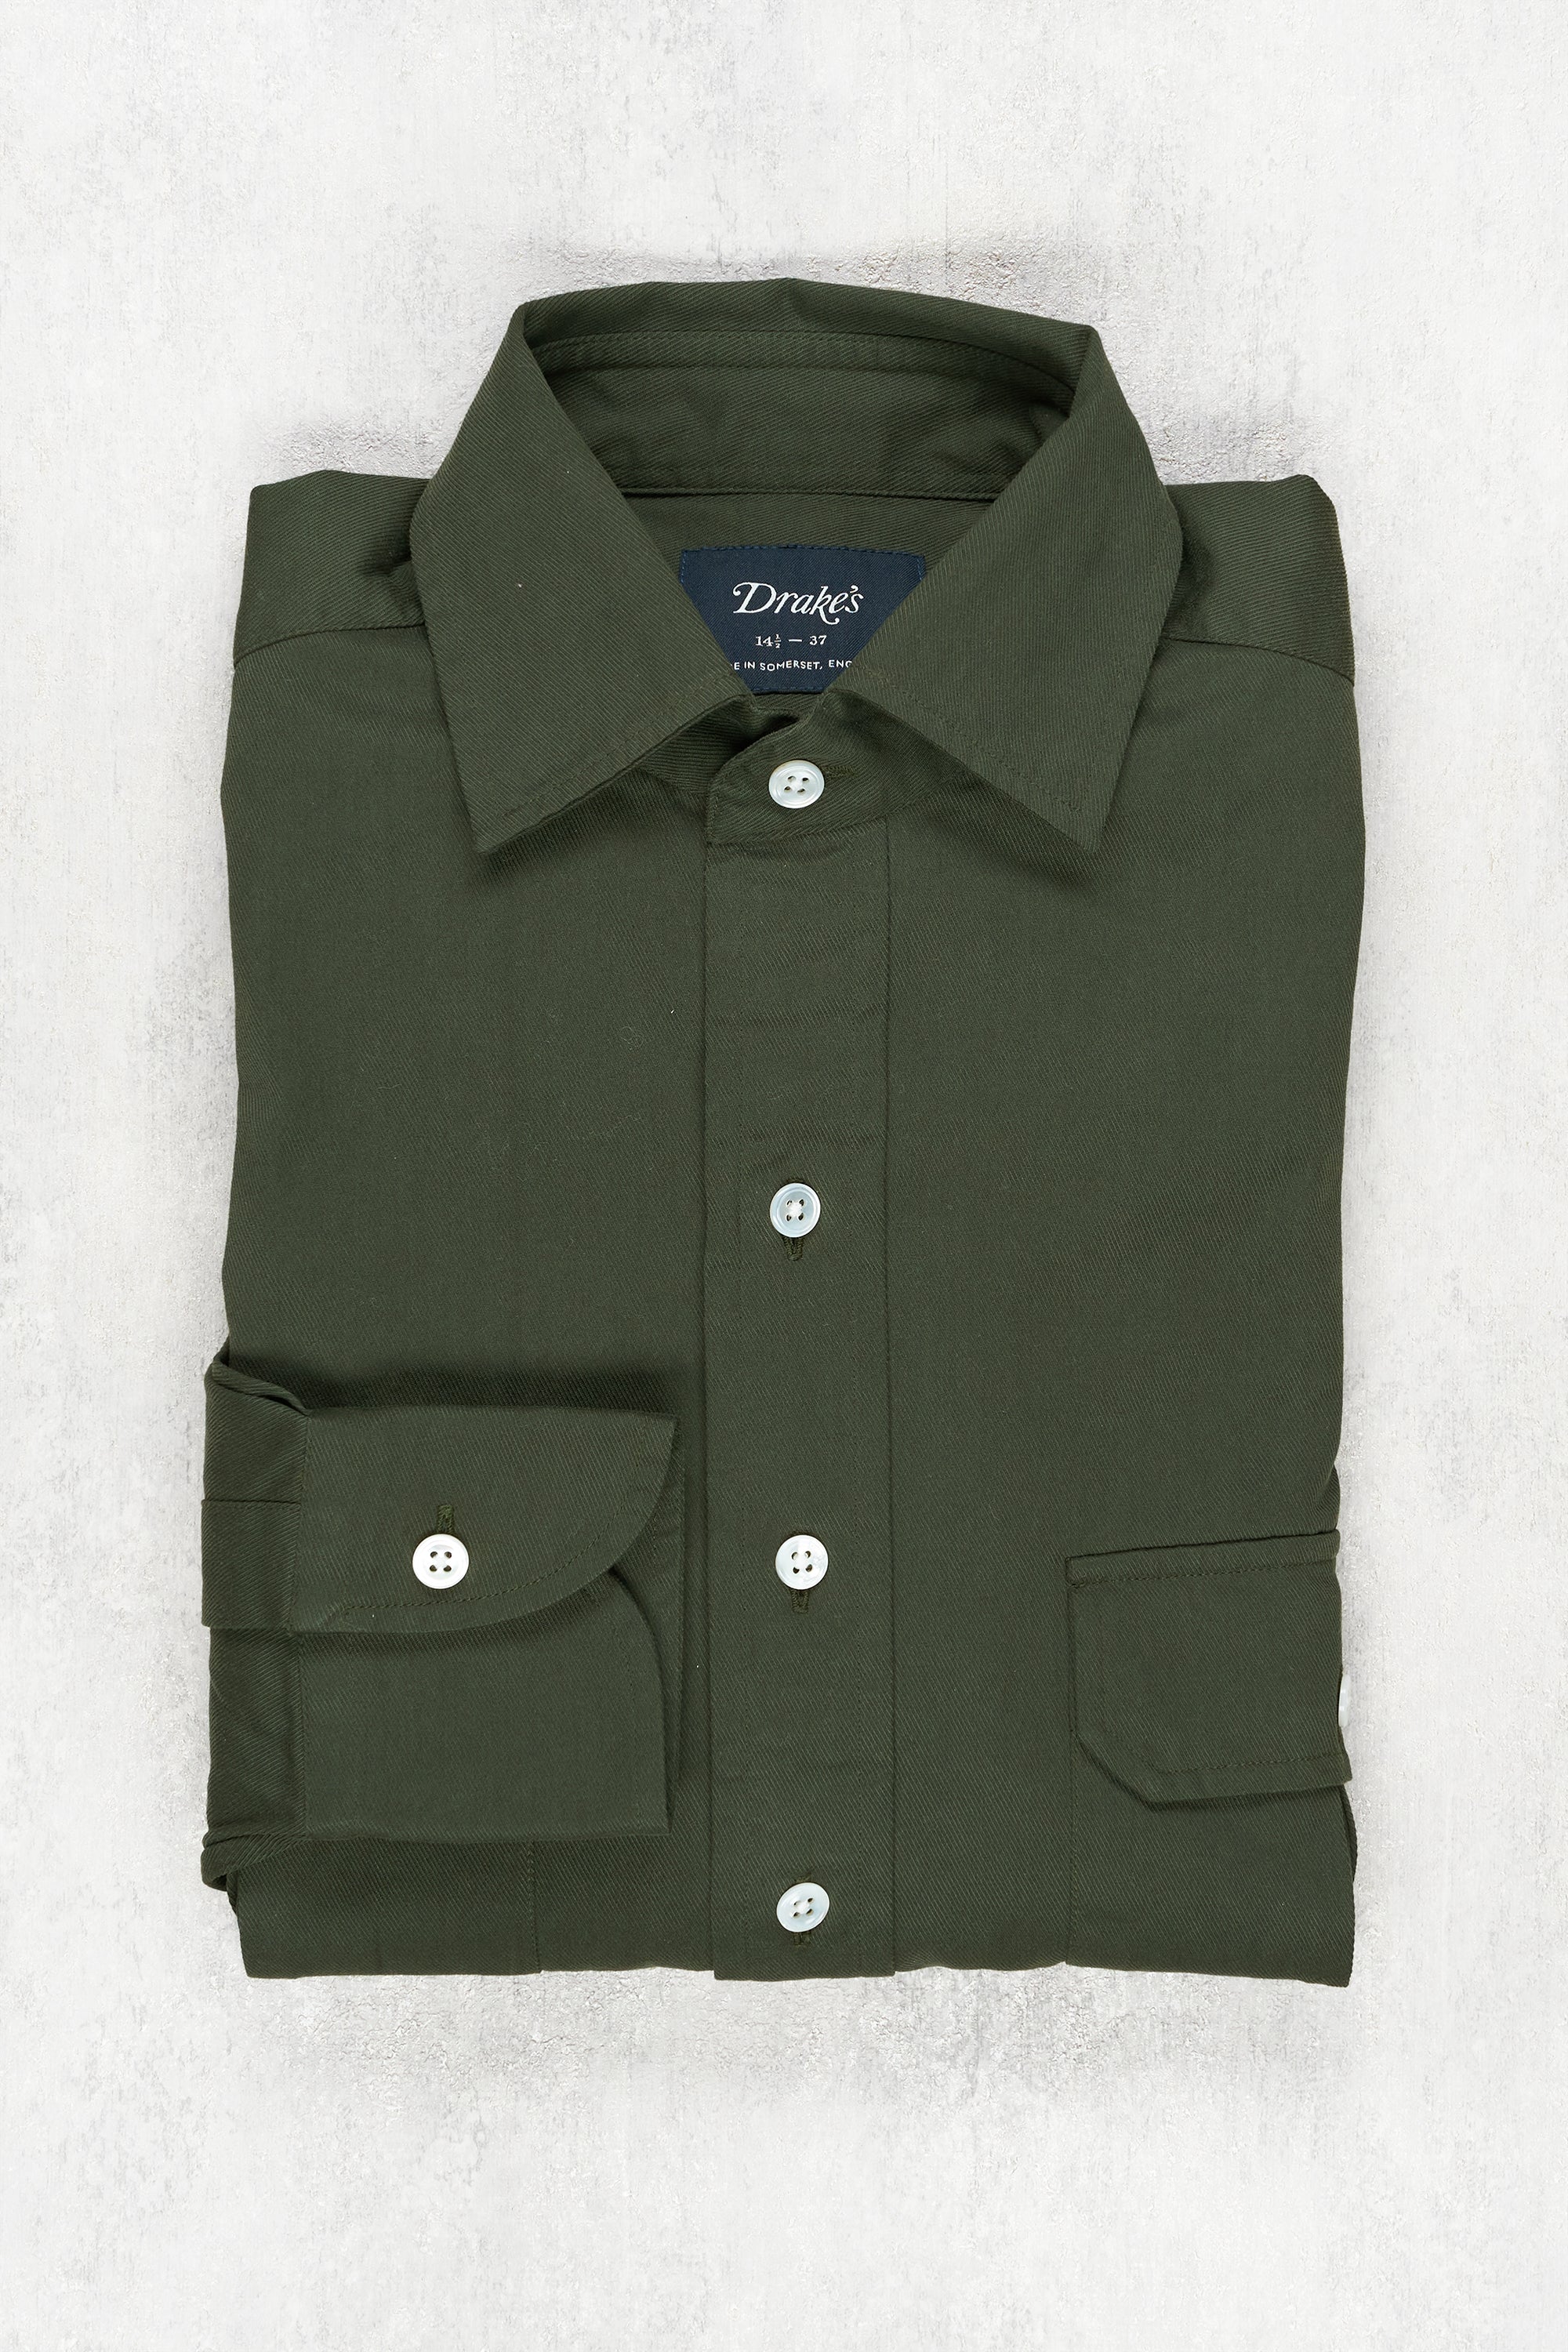 Drake's Green Cotton Spread Collar Shirt